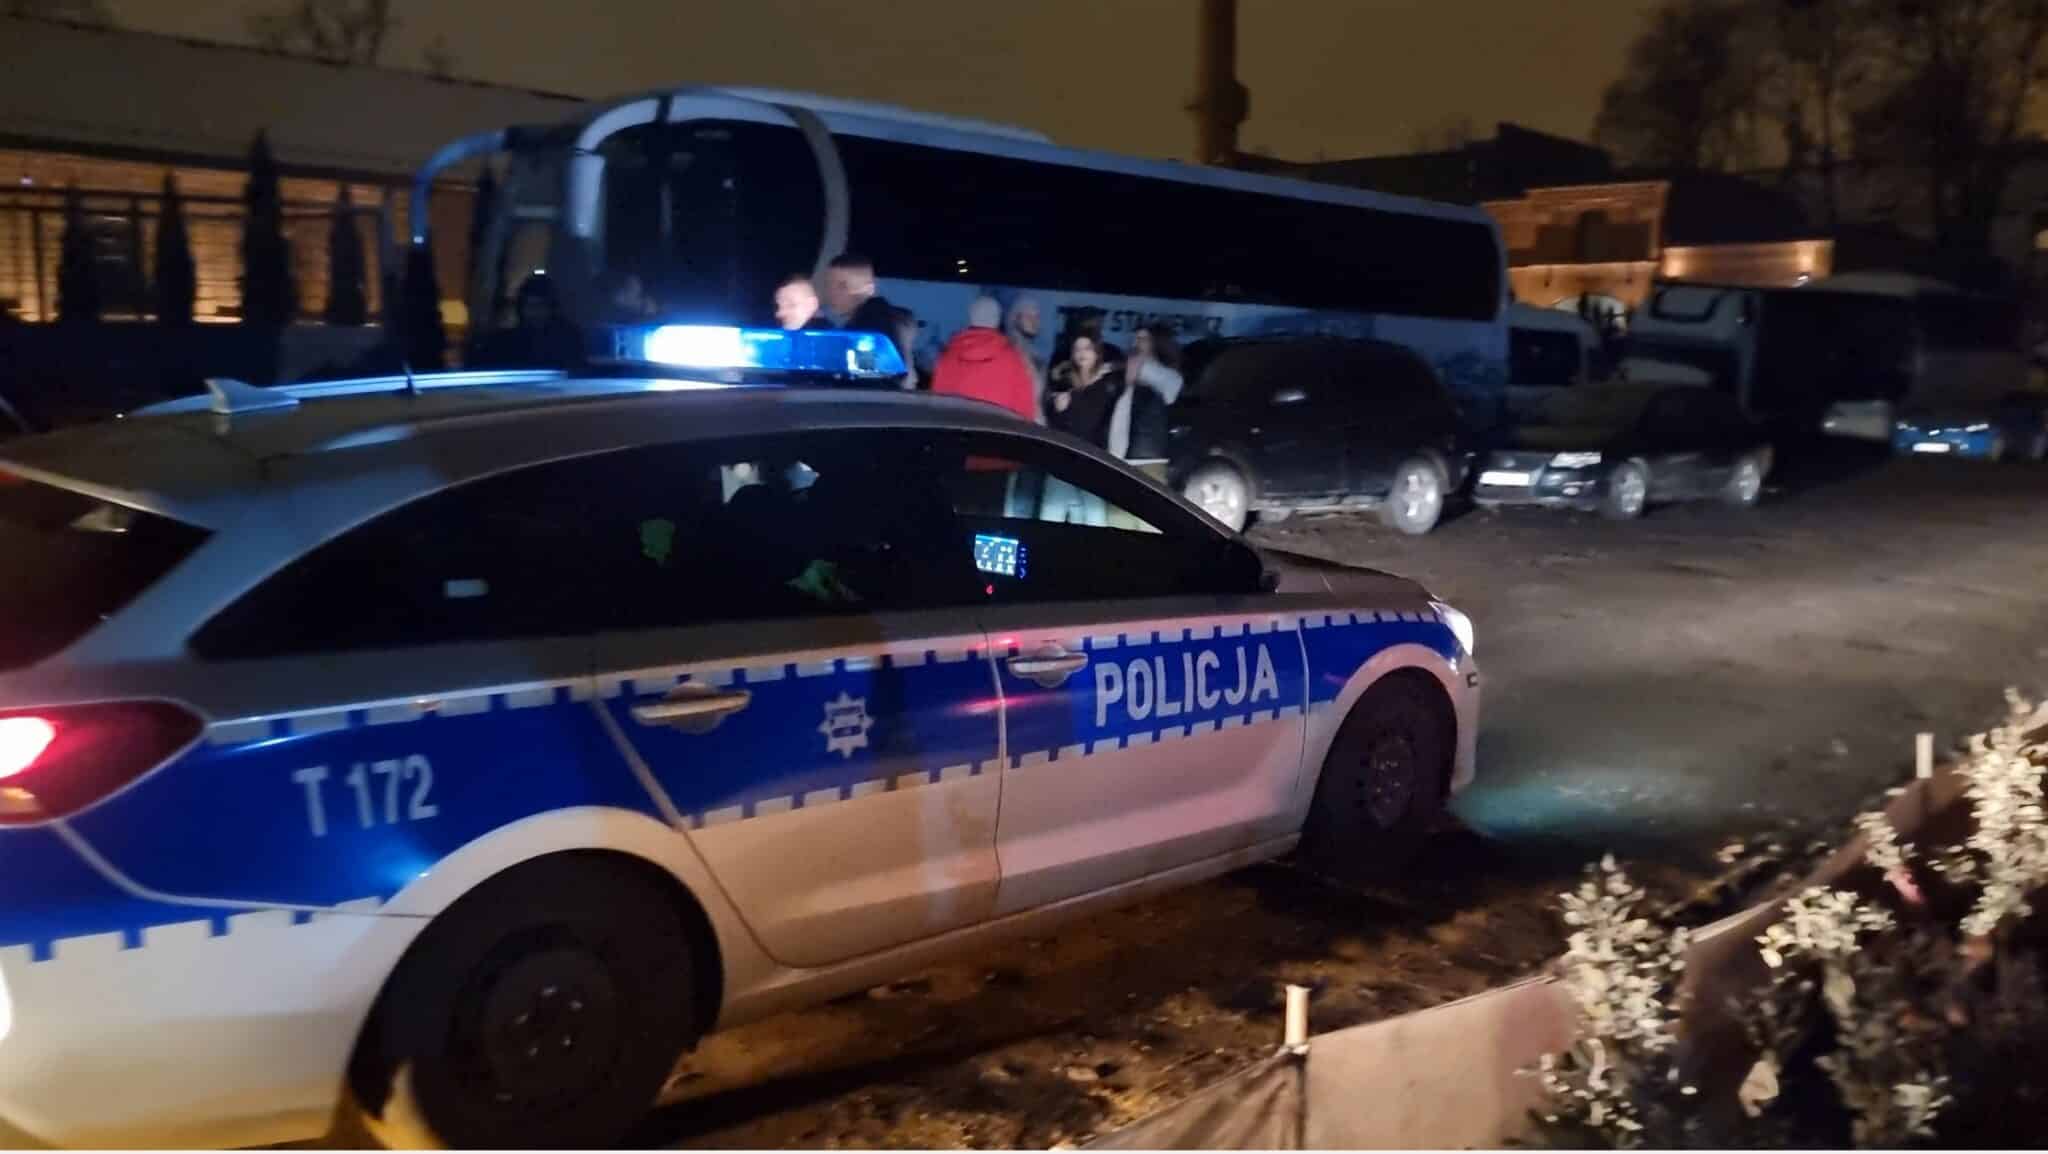 Policjanci nie mieli litości dla olsztyńskiej młodzieży. Ponad 60 wykroczeń po imprezie NJO i Melanż Company impreza Olsztyn, Wiadomości, zShowcase